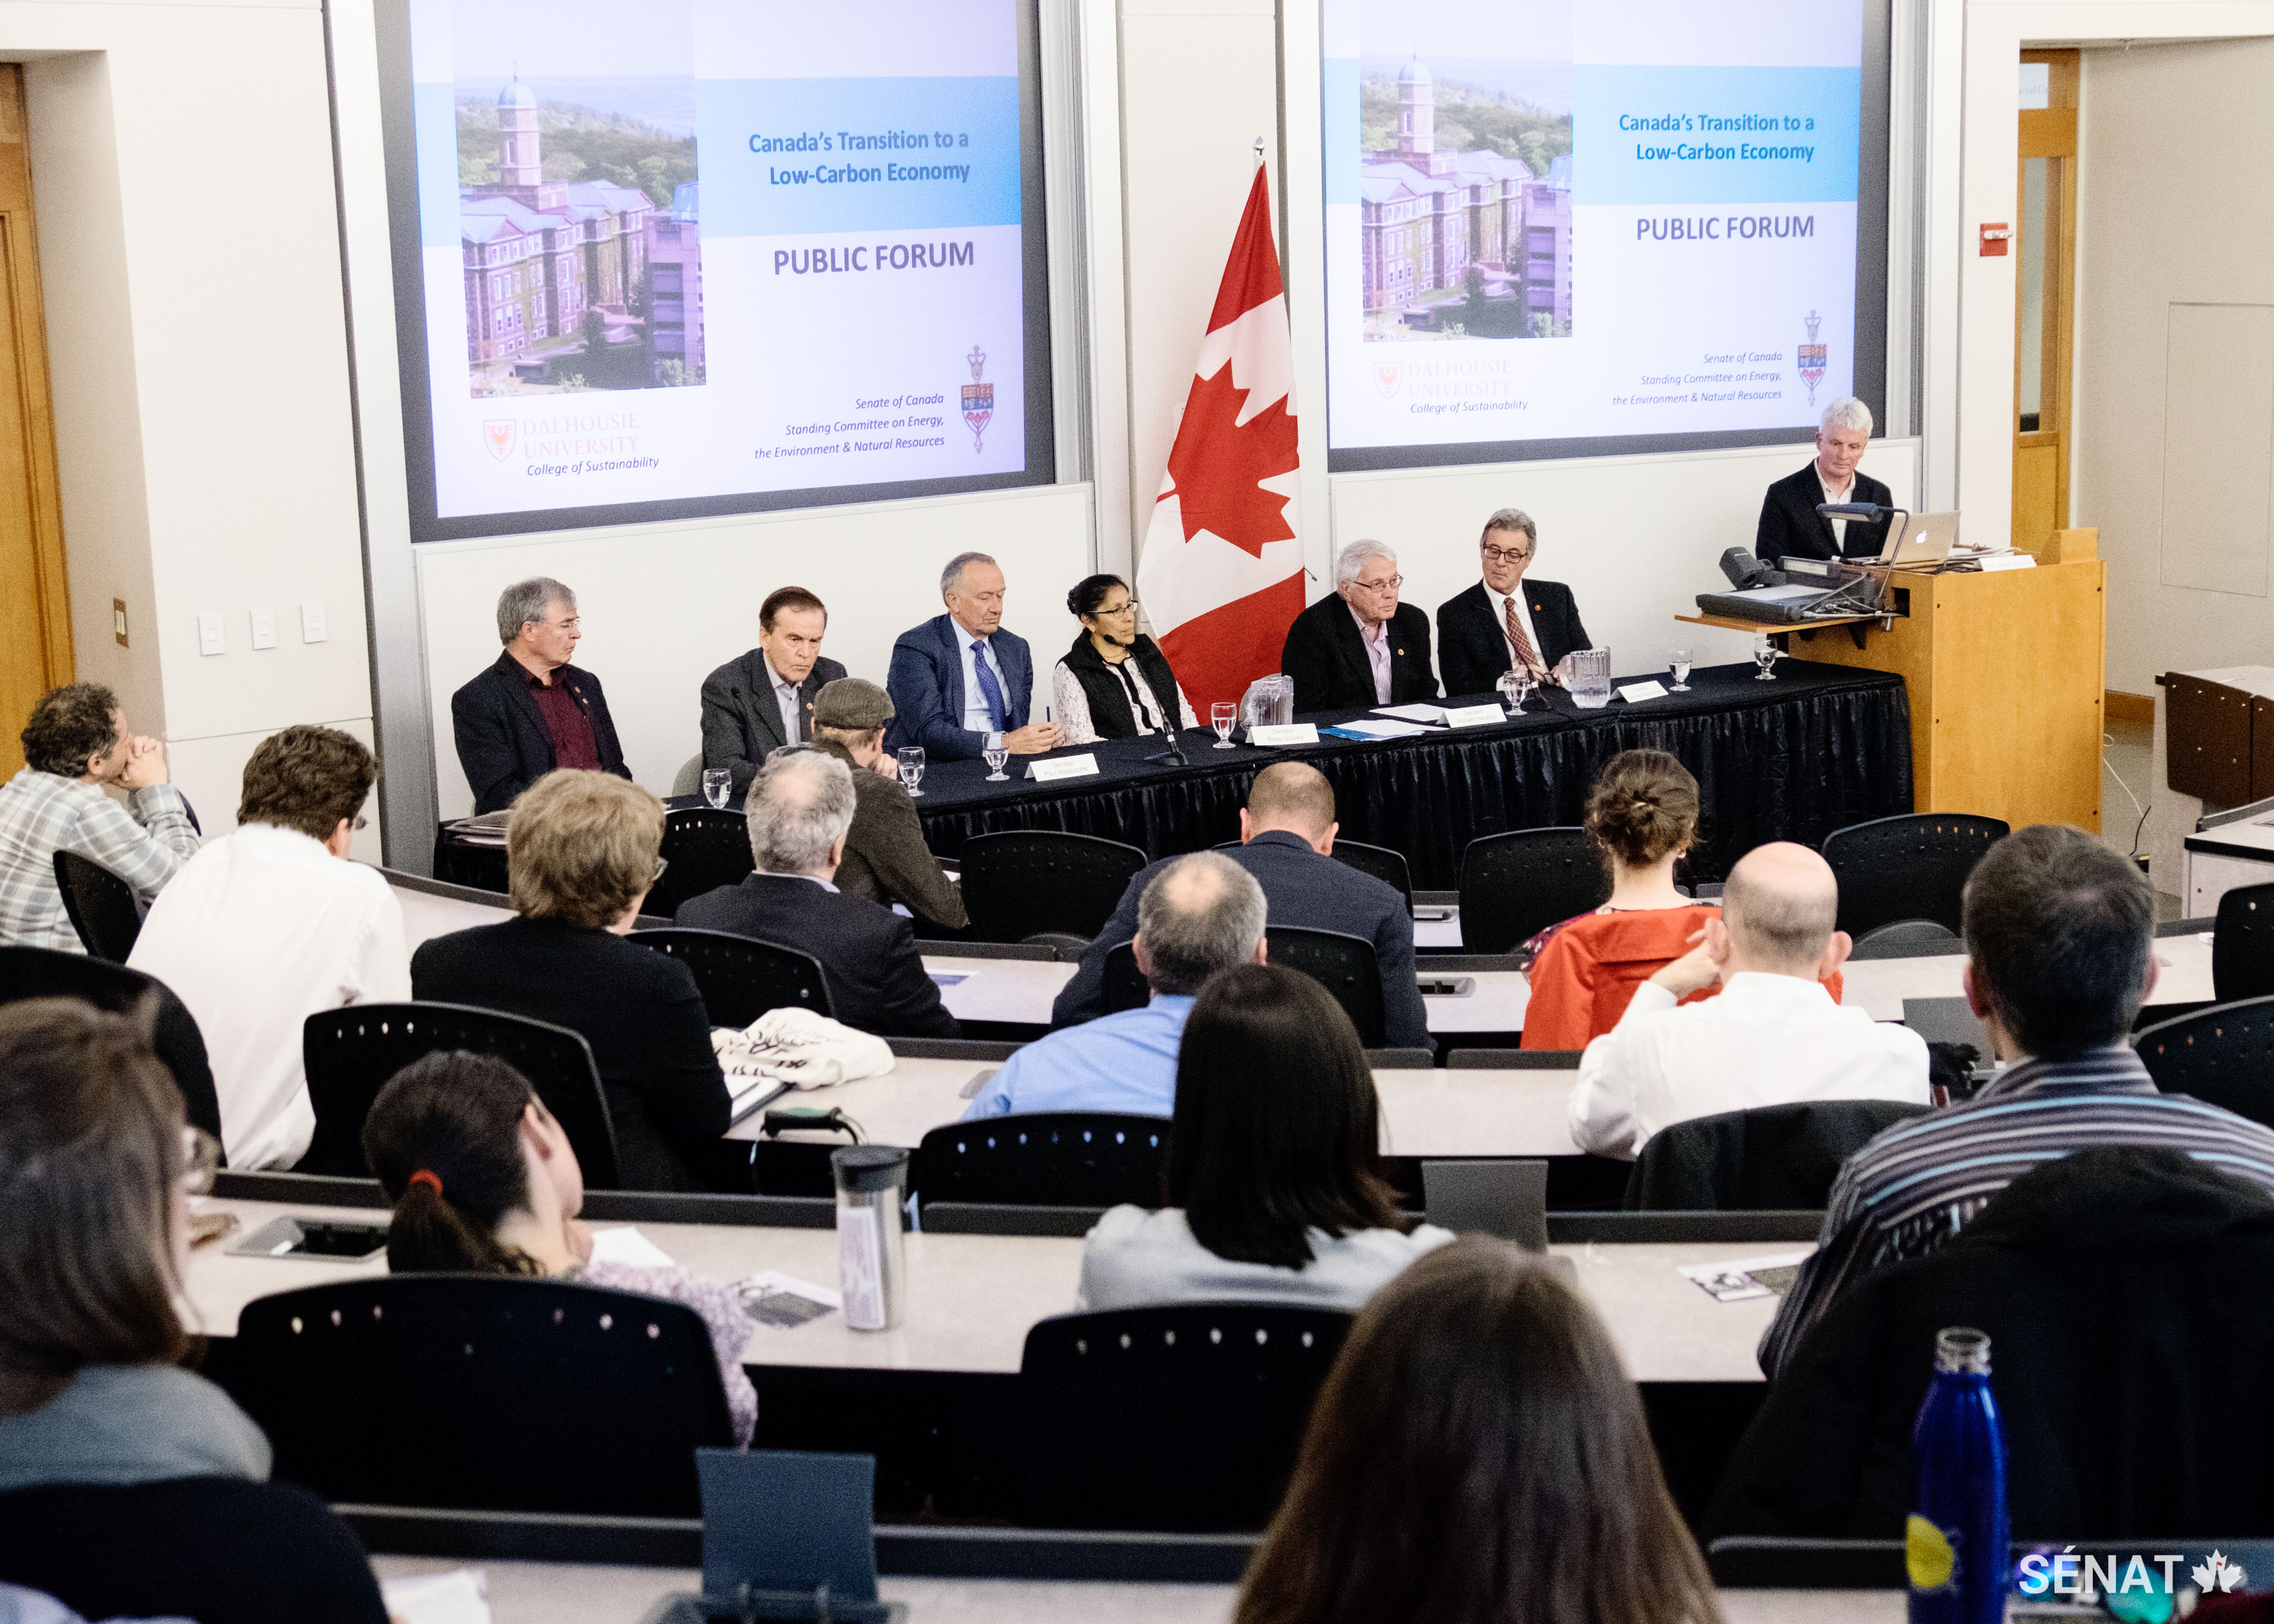 Les sénateurs participent à un forum de discussion à l’Université Dalhousie qui porte sur la transition du Canada vers une économie à faibles émissions de carbone.